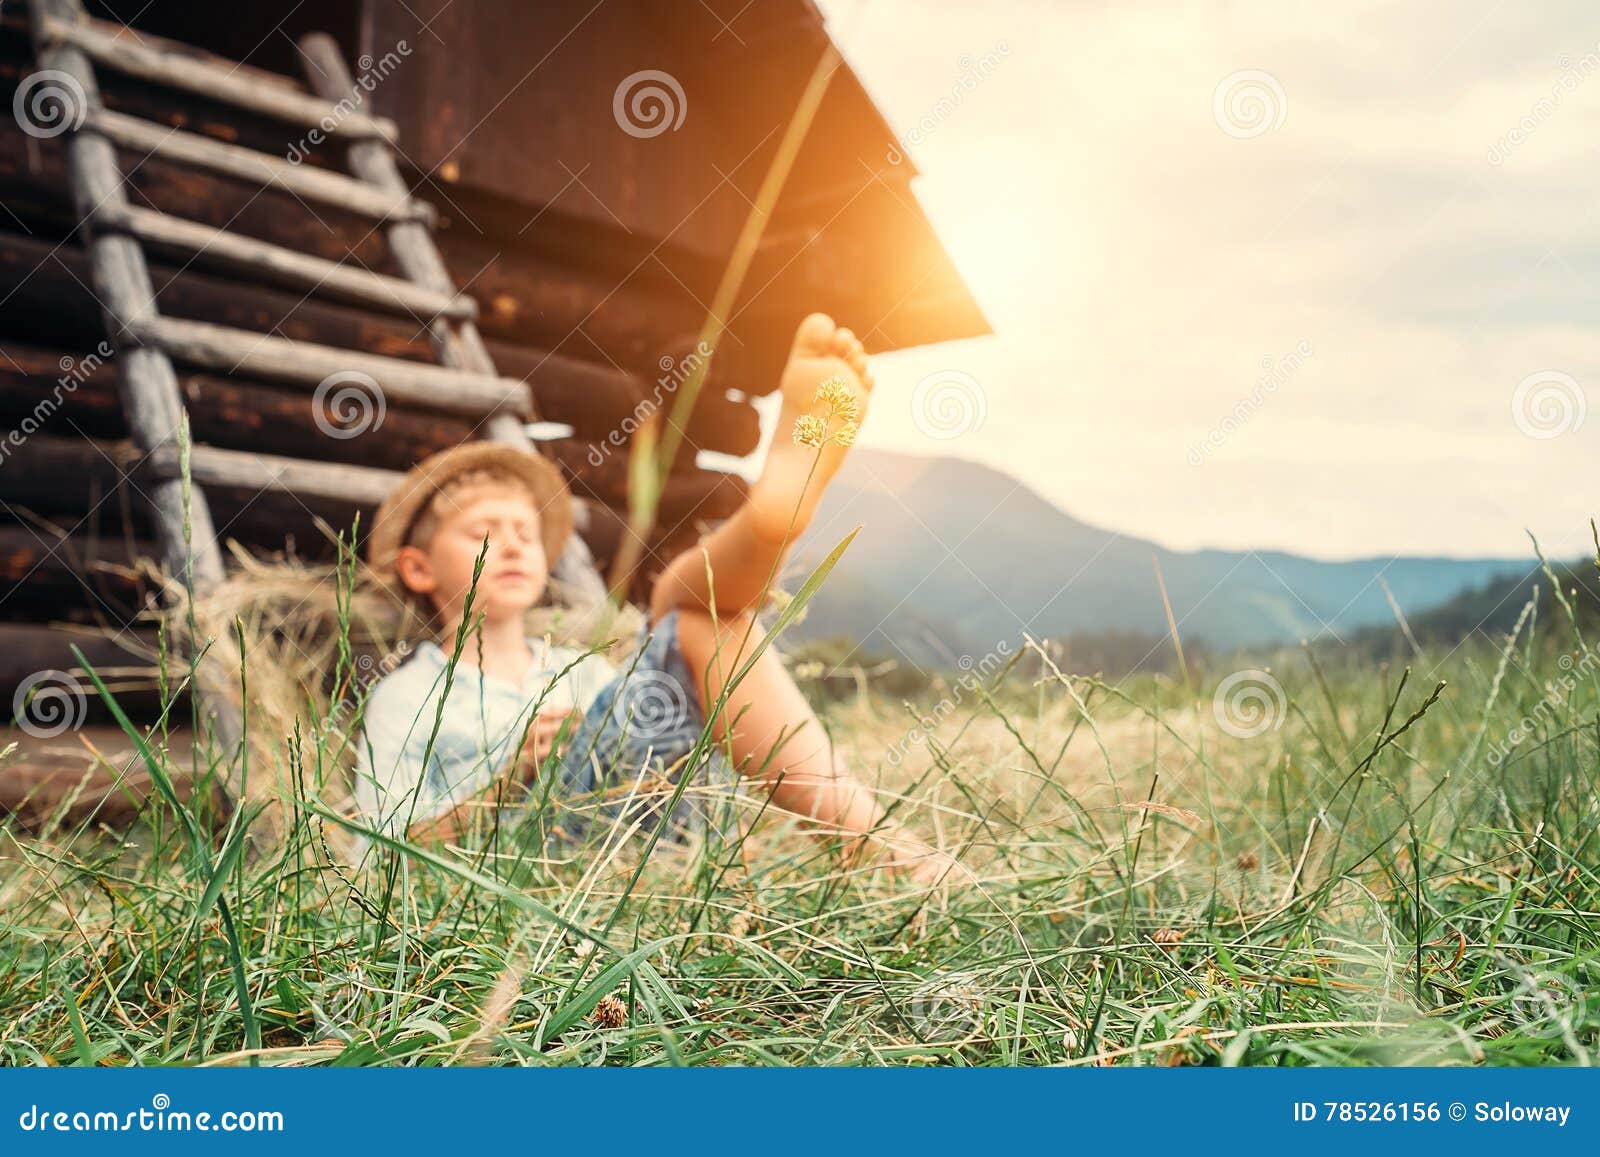 boy sleeps in grass under hayloft in summer afternoon